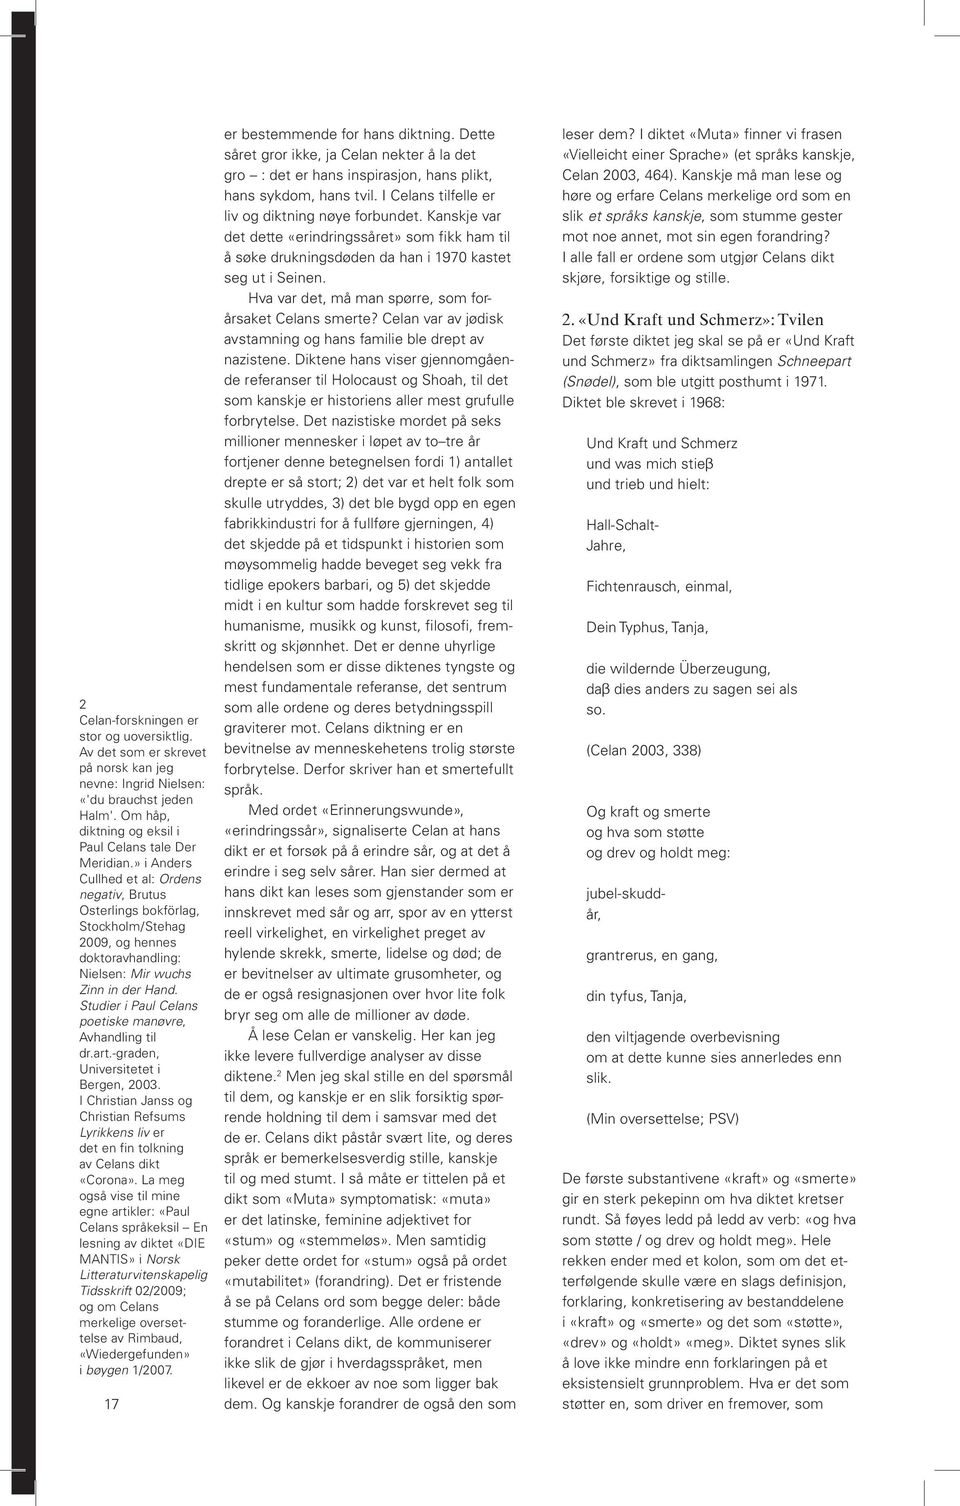 Studier i Paul Celans poetiske manøvre, Avhandling til dr.art.-graden, Universitetet i Bergen, 2003.